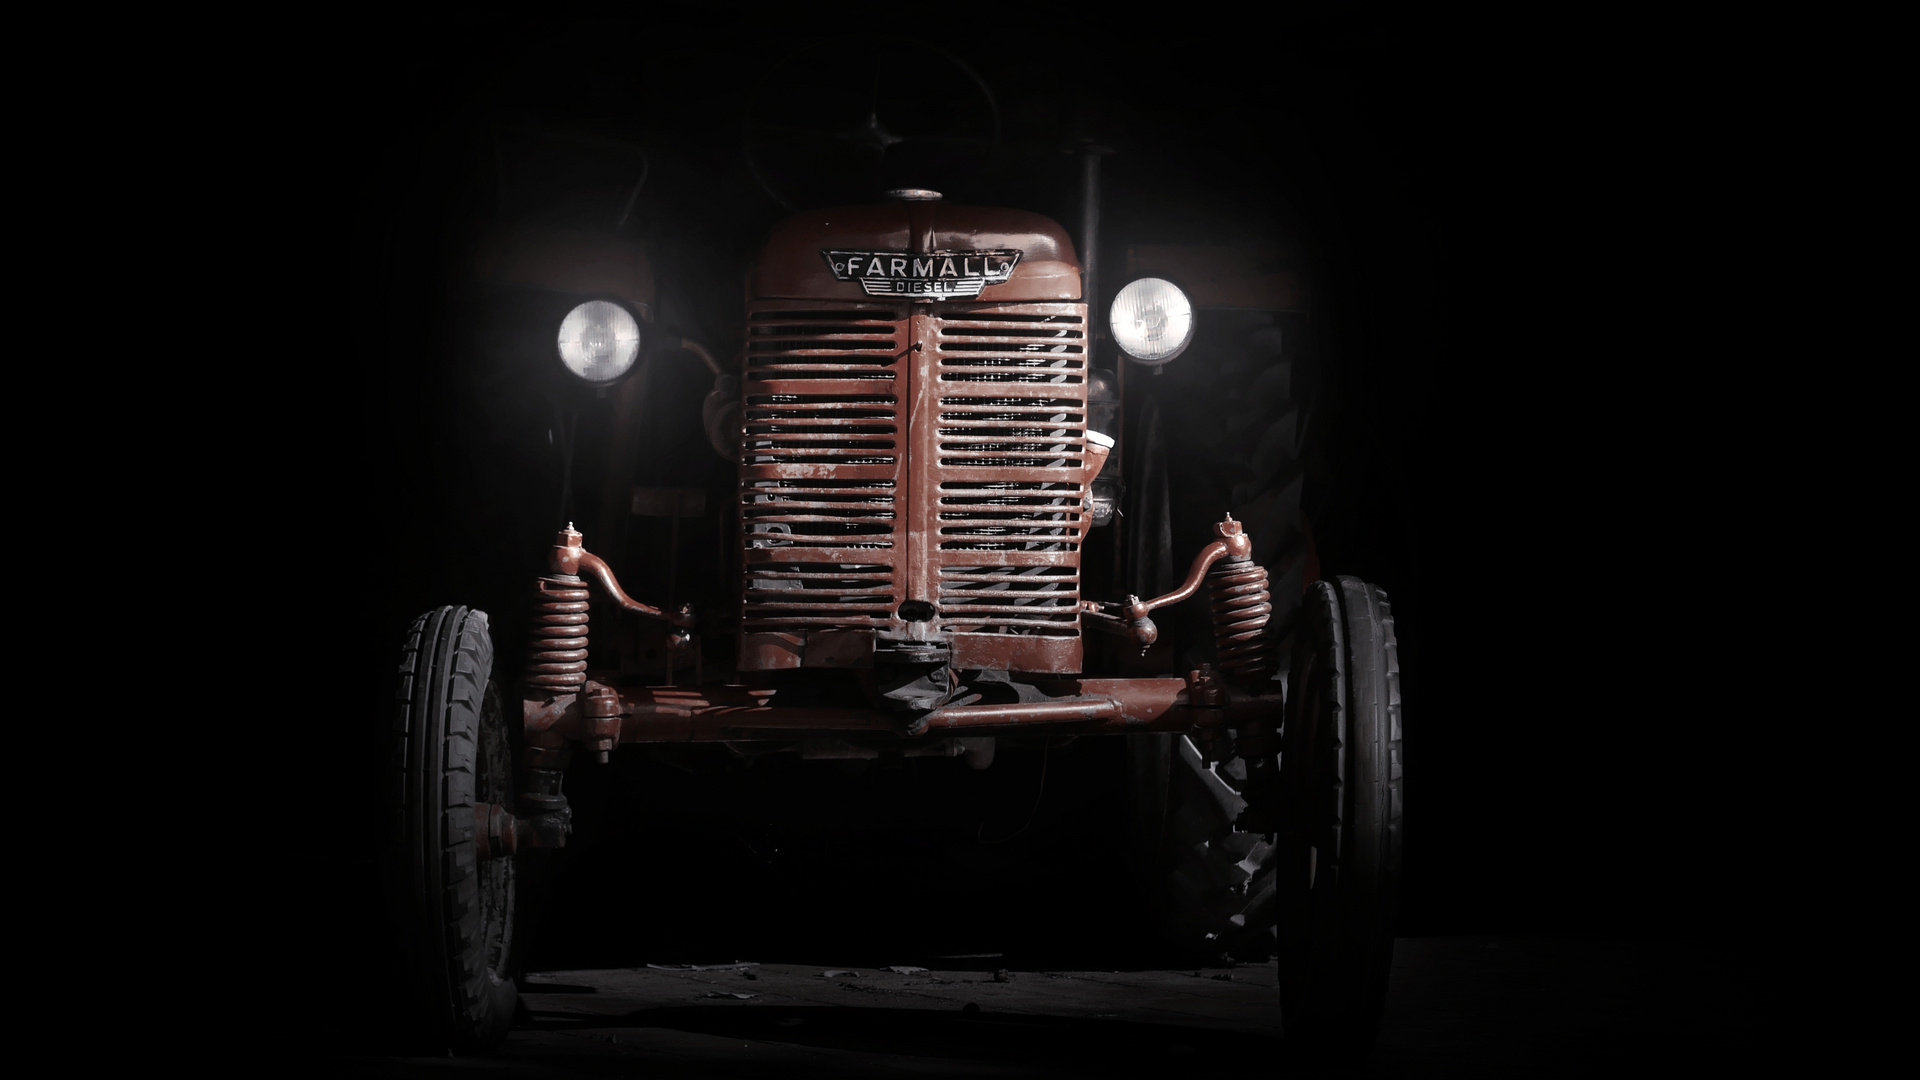 Traktor Oldtimer